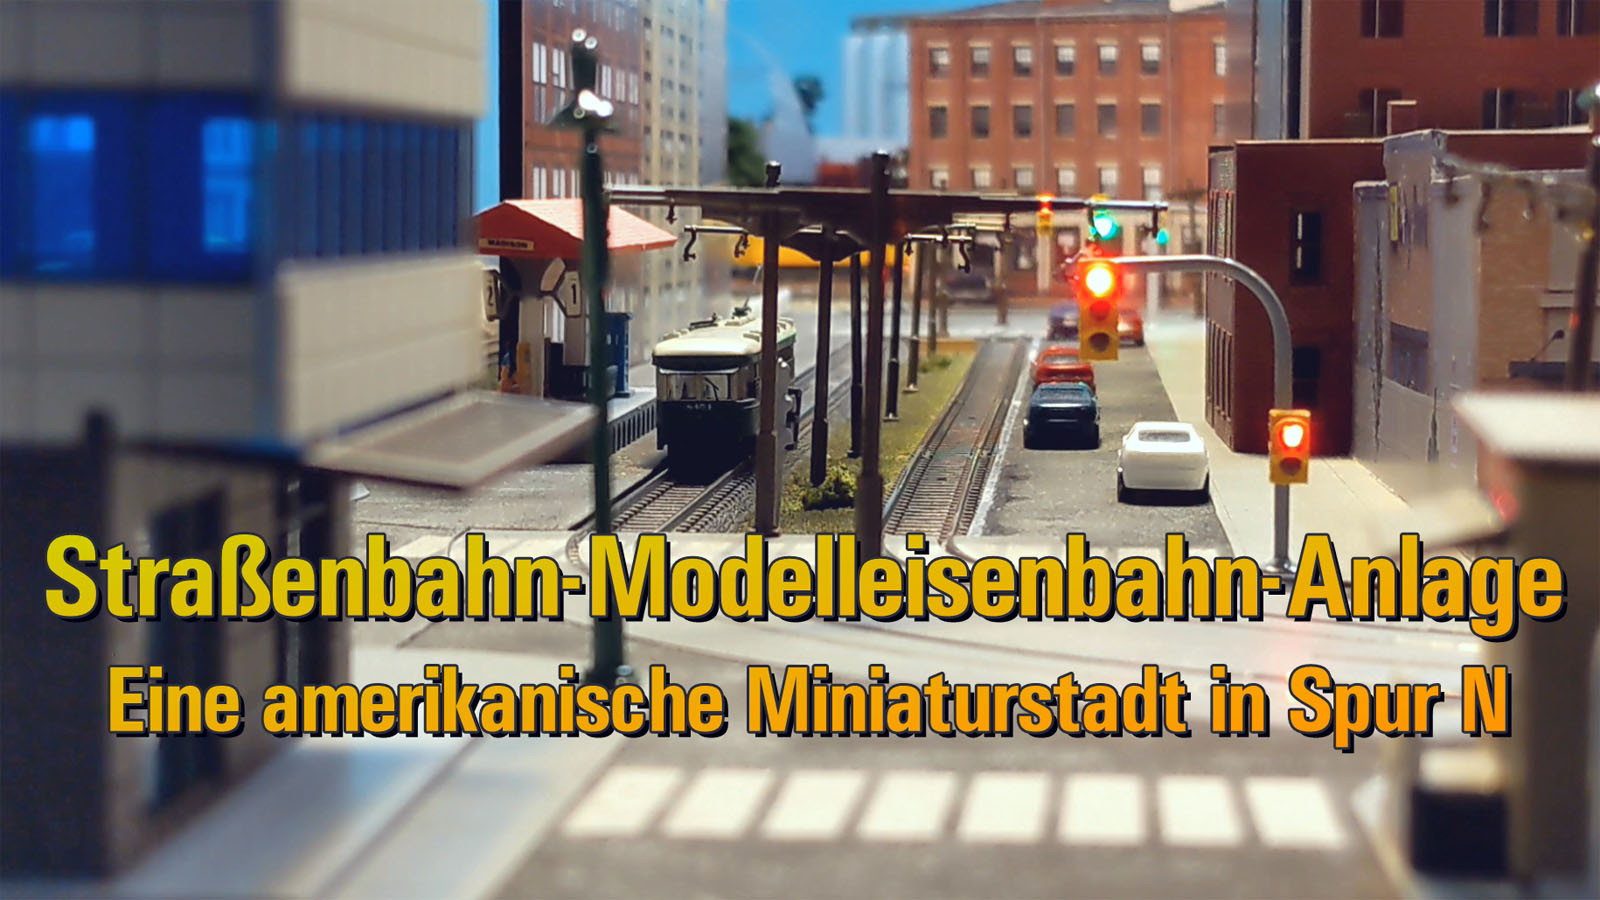 Modellstraßenbahn - Detaillierte Straßenbahn-Modelleisenbahn-Anlage mit Ampeln in Spur N aus Amerika